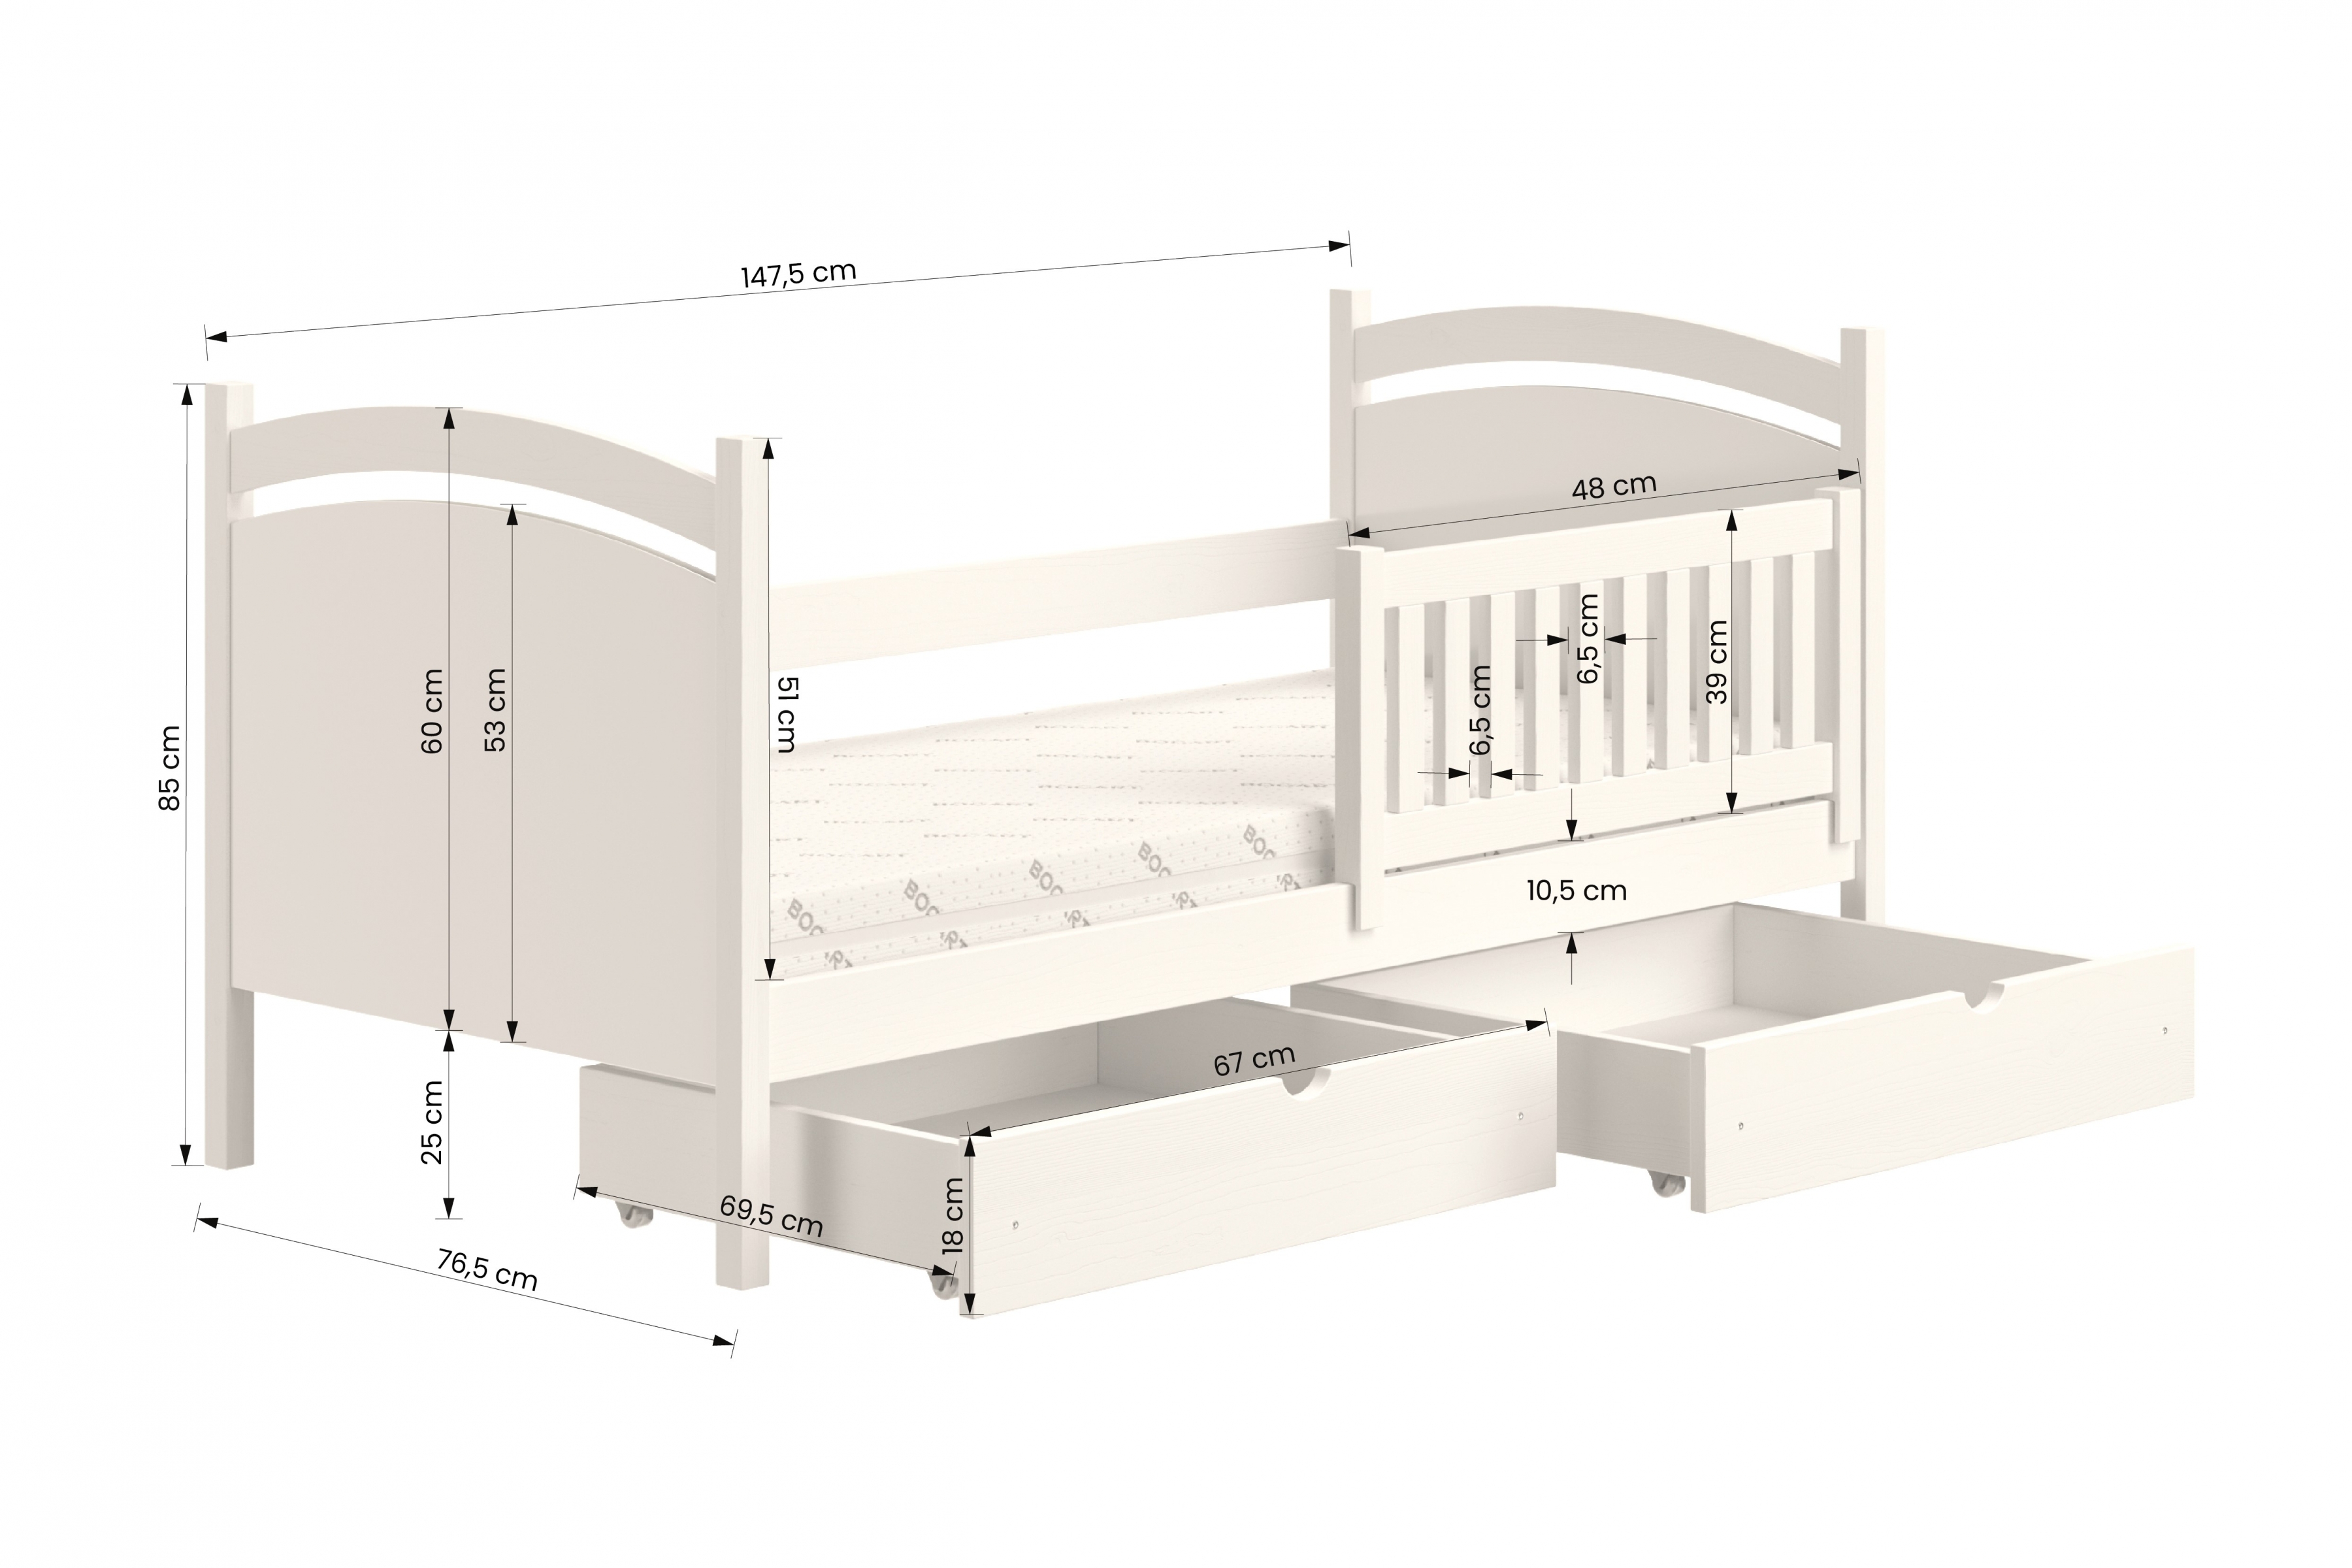 postel dětské s tabulí na suché mazání Amely - Barva Bílý, rozměr 70x140 postel dzieciece z tablica suchoscieralna Amely - Rozměry